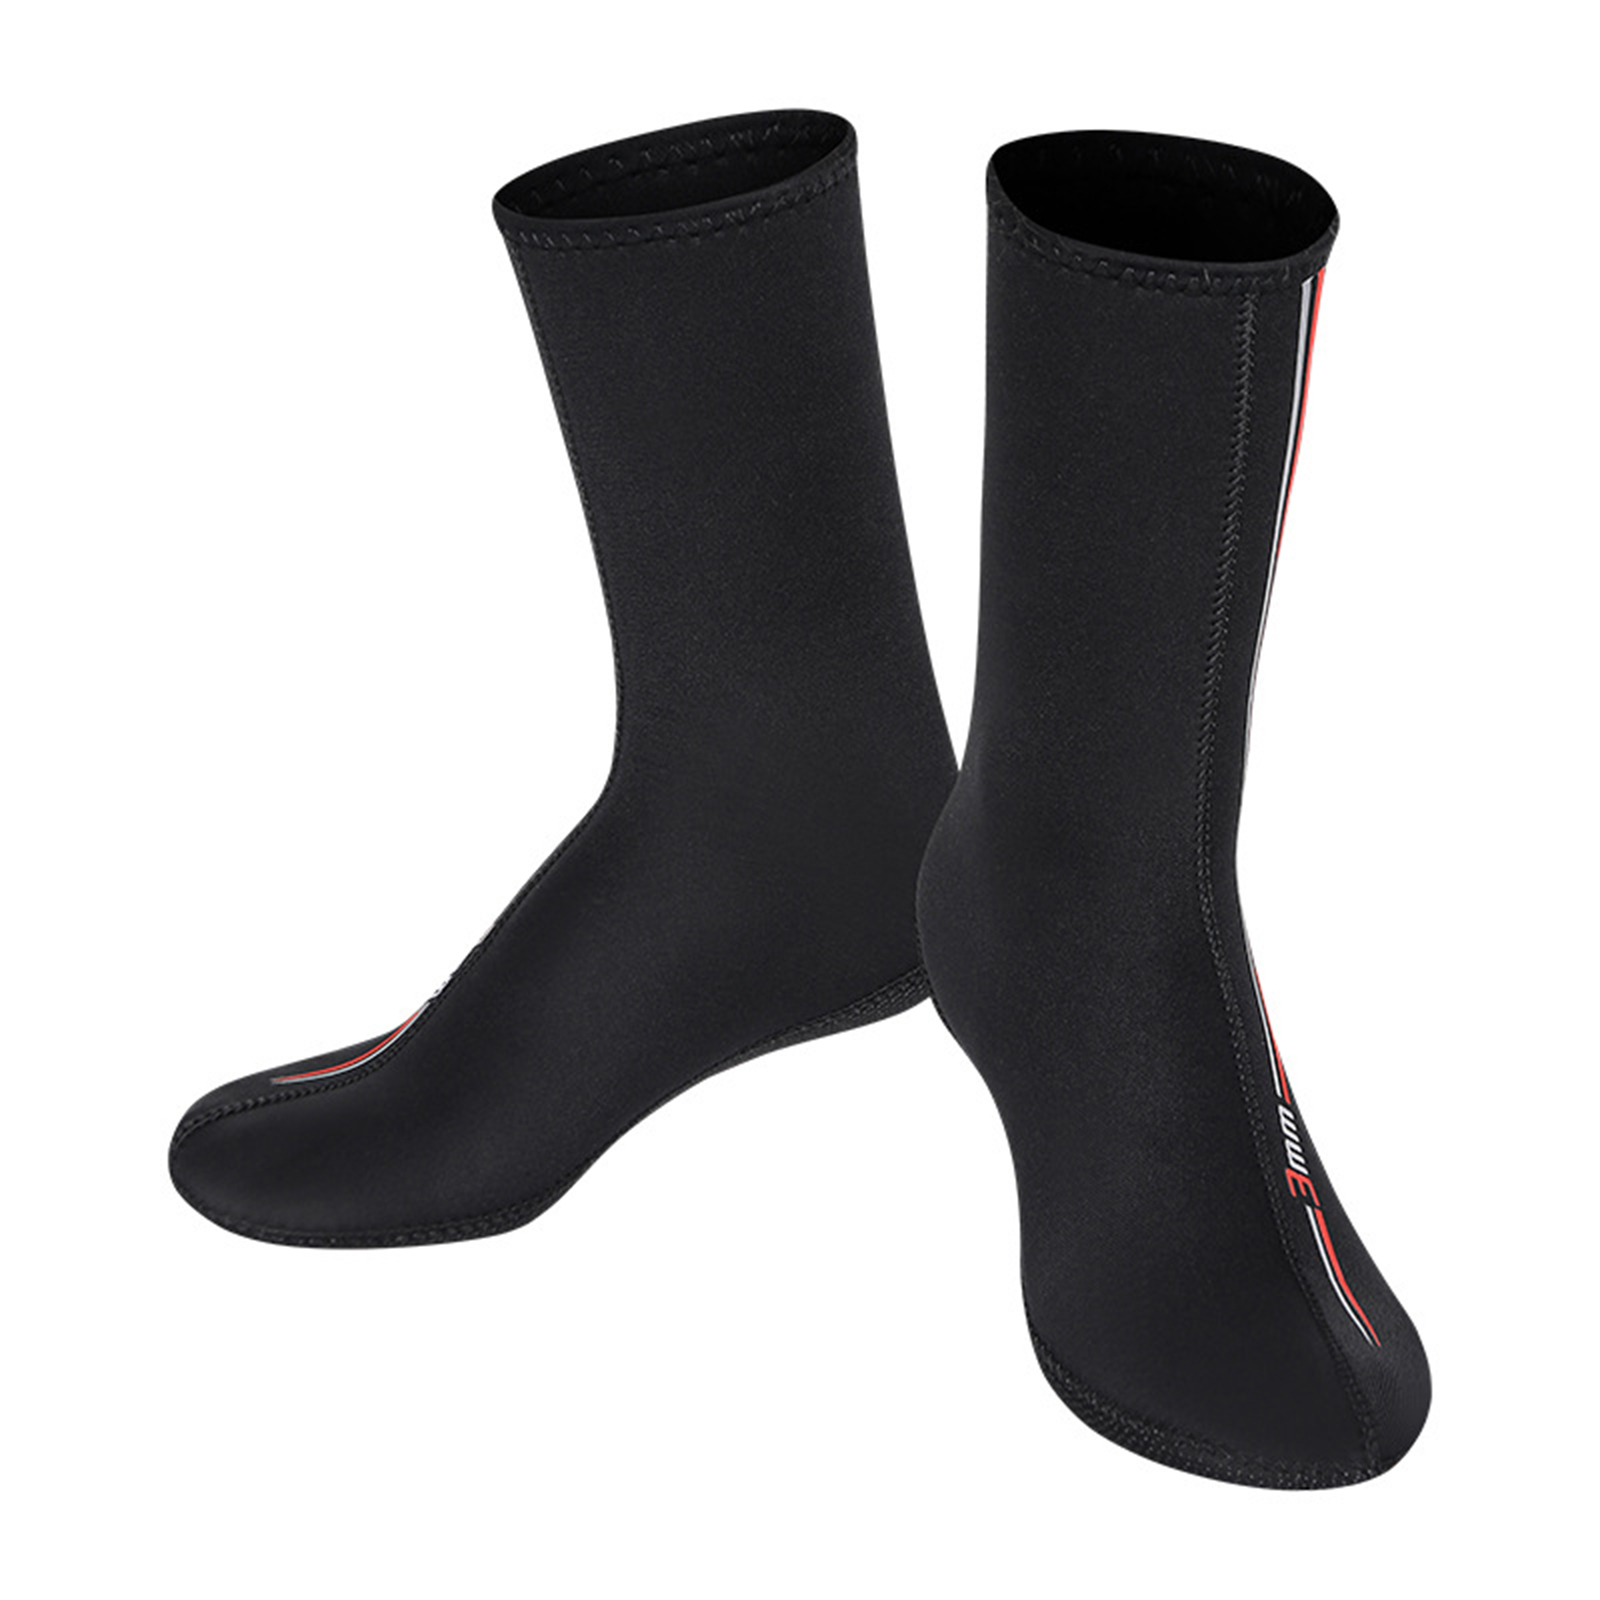 Größe 3 To 13 UK Fuß Tbf 3mm Neopren Stiefel Socken Taucheranzug 3mm Sox 